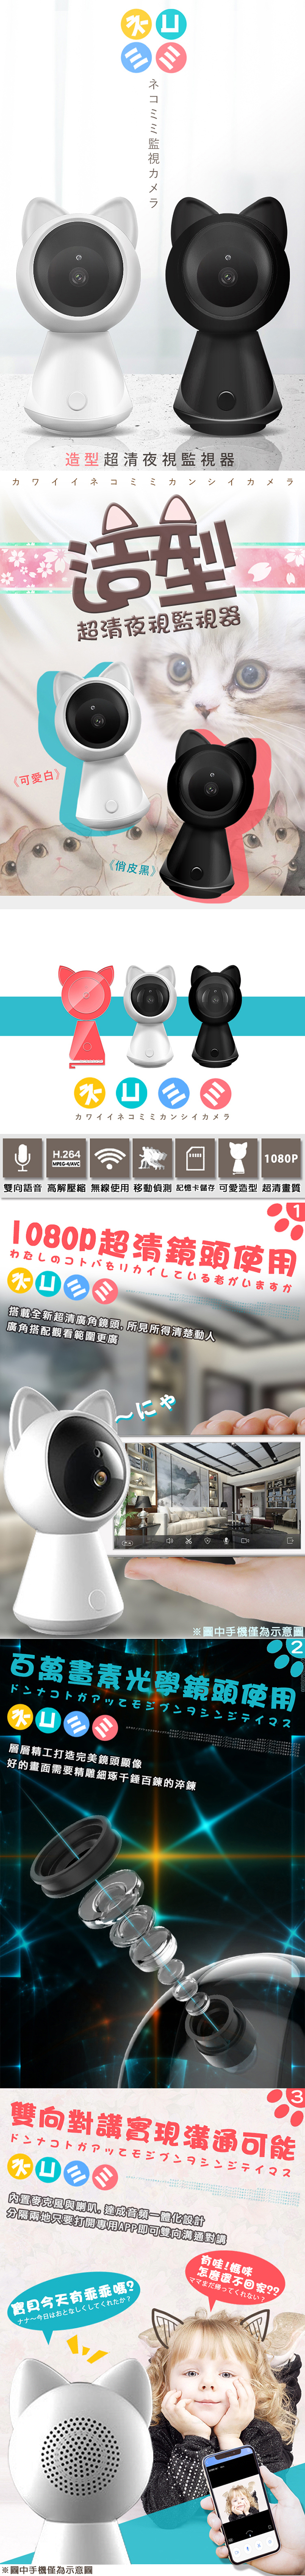 【Uta】御守貓真1080P無線網路智慧旋轉監視機Cat-1(高階版)